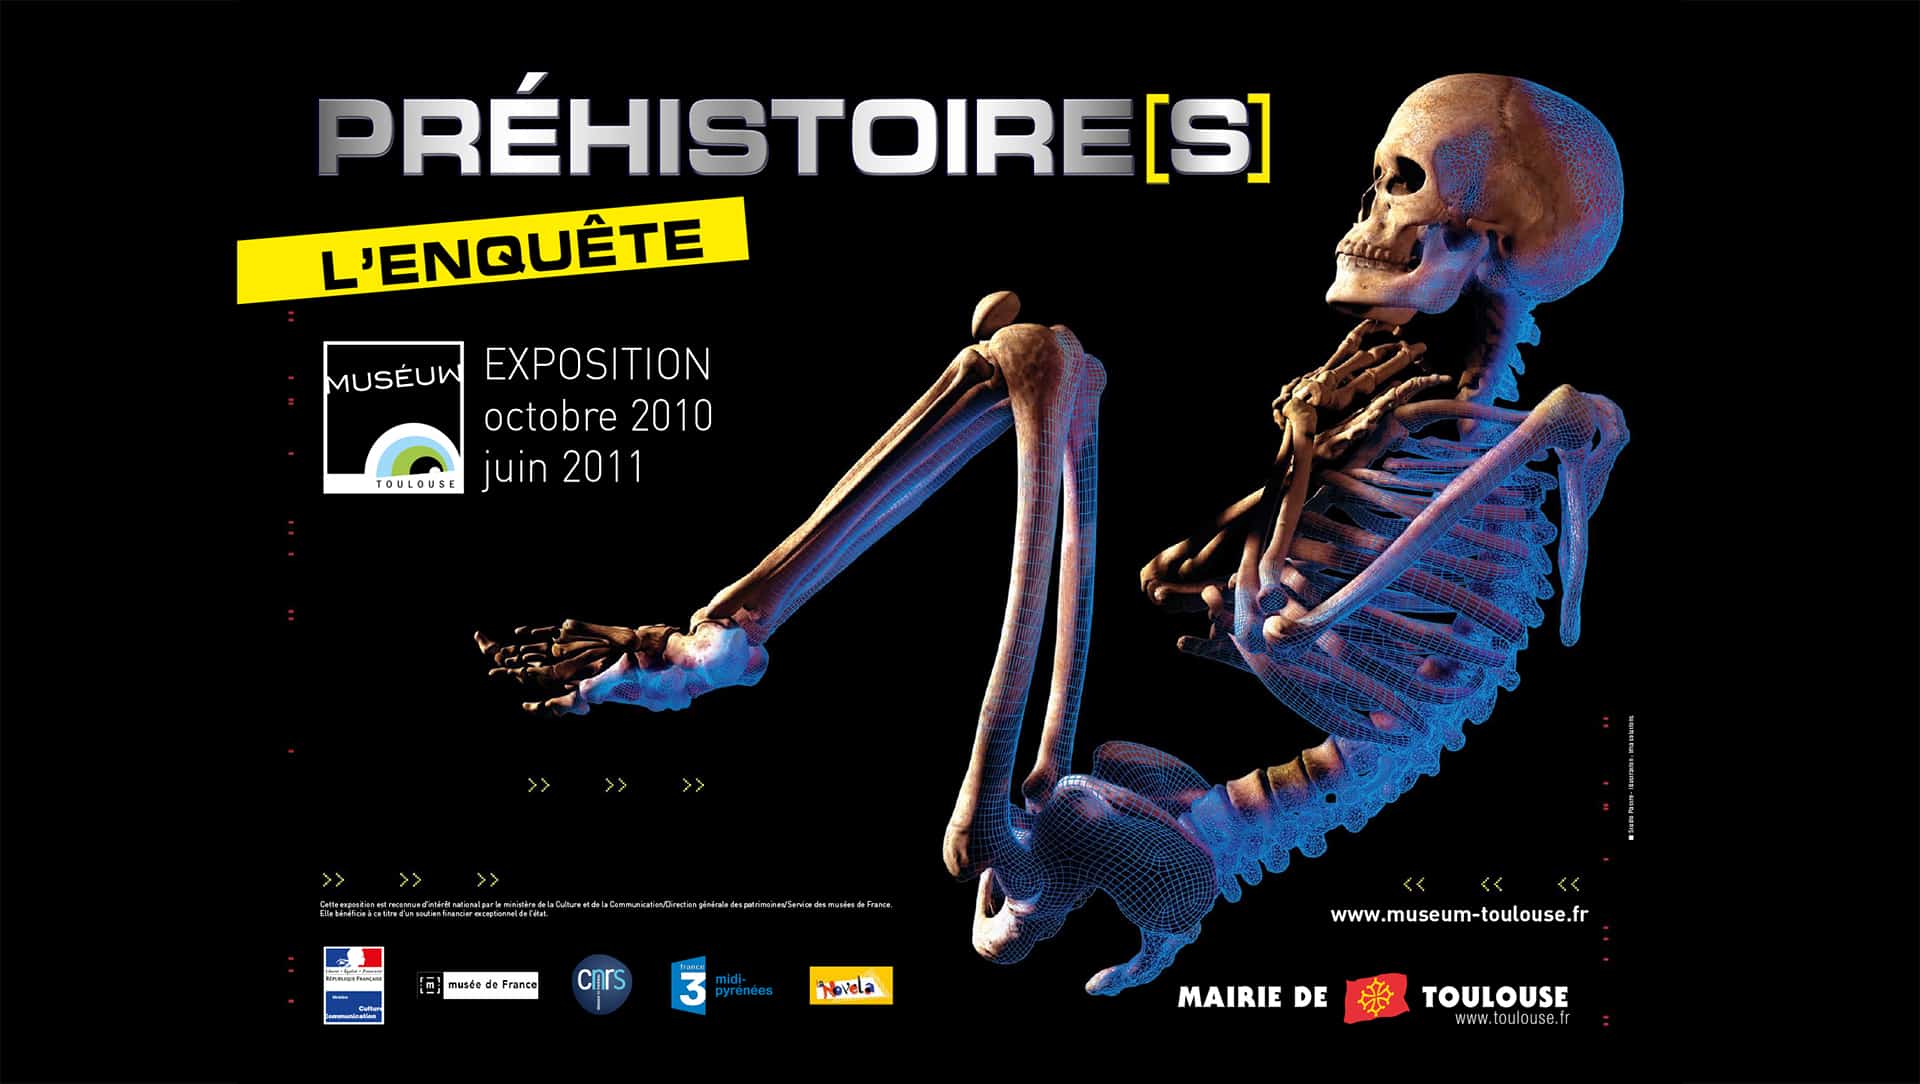 Muséum de Toulouse – Préhistoire[s]:l’enquête